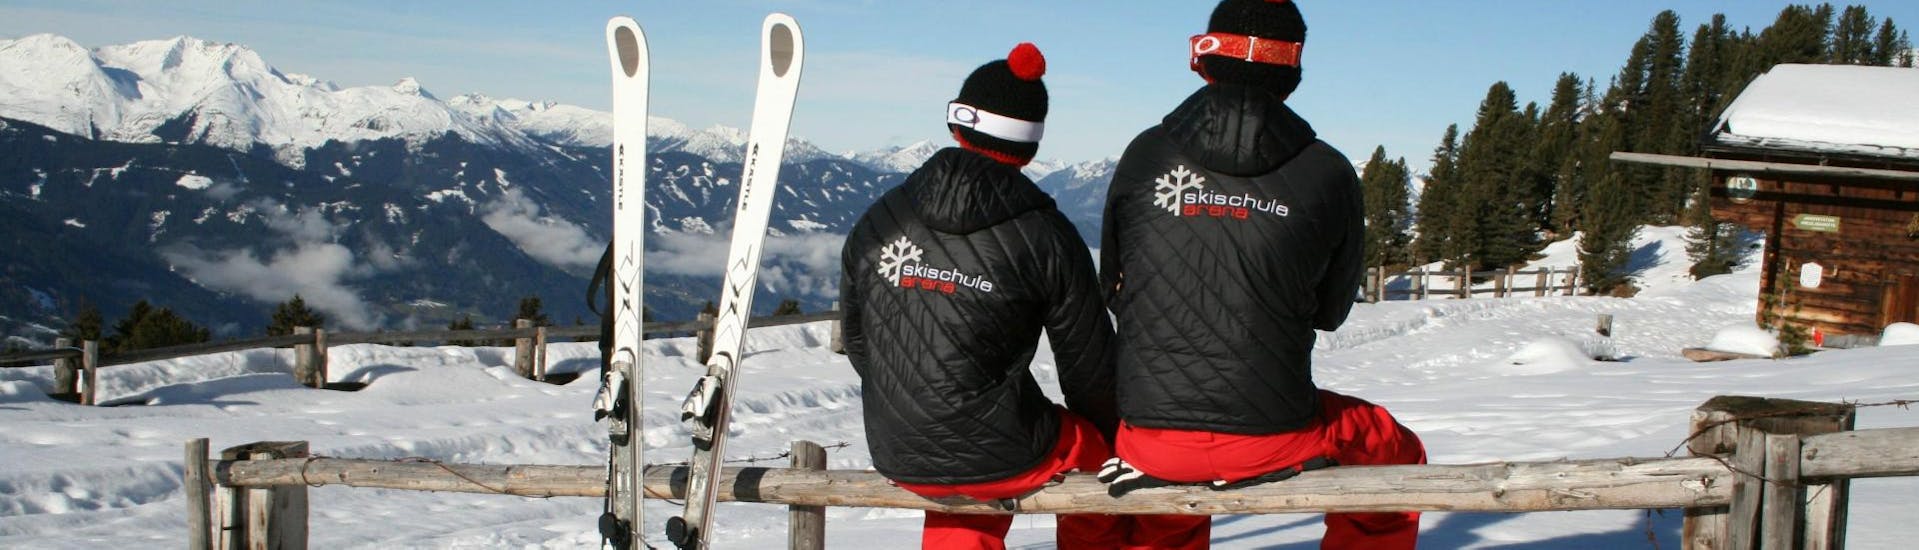 À la fin des cours de ski pour adultes - débutants, deux moniteurs de ski de la Skischule Arena de Zell am Ziller font une pause et profitent de la vue magnifique sur les montagnes enneigées.